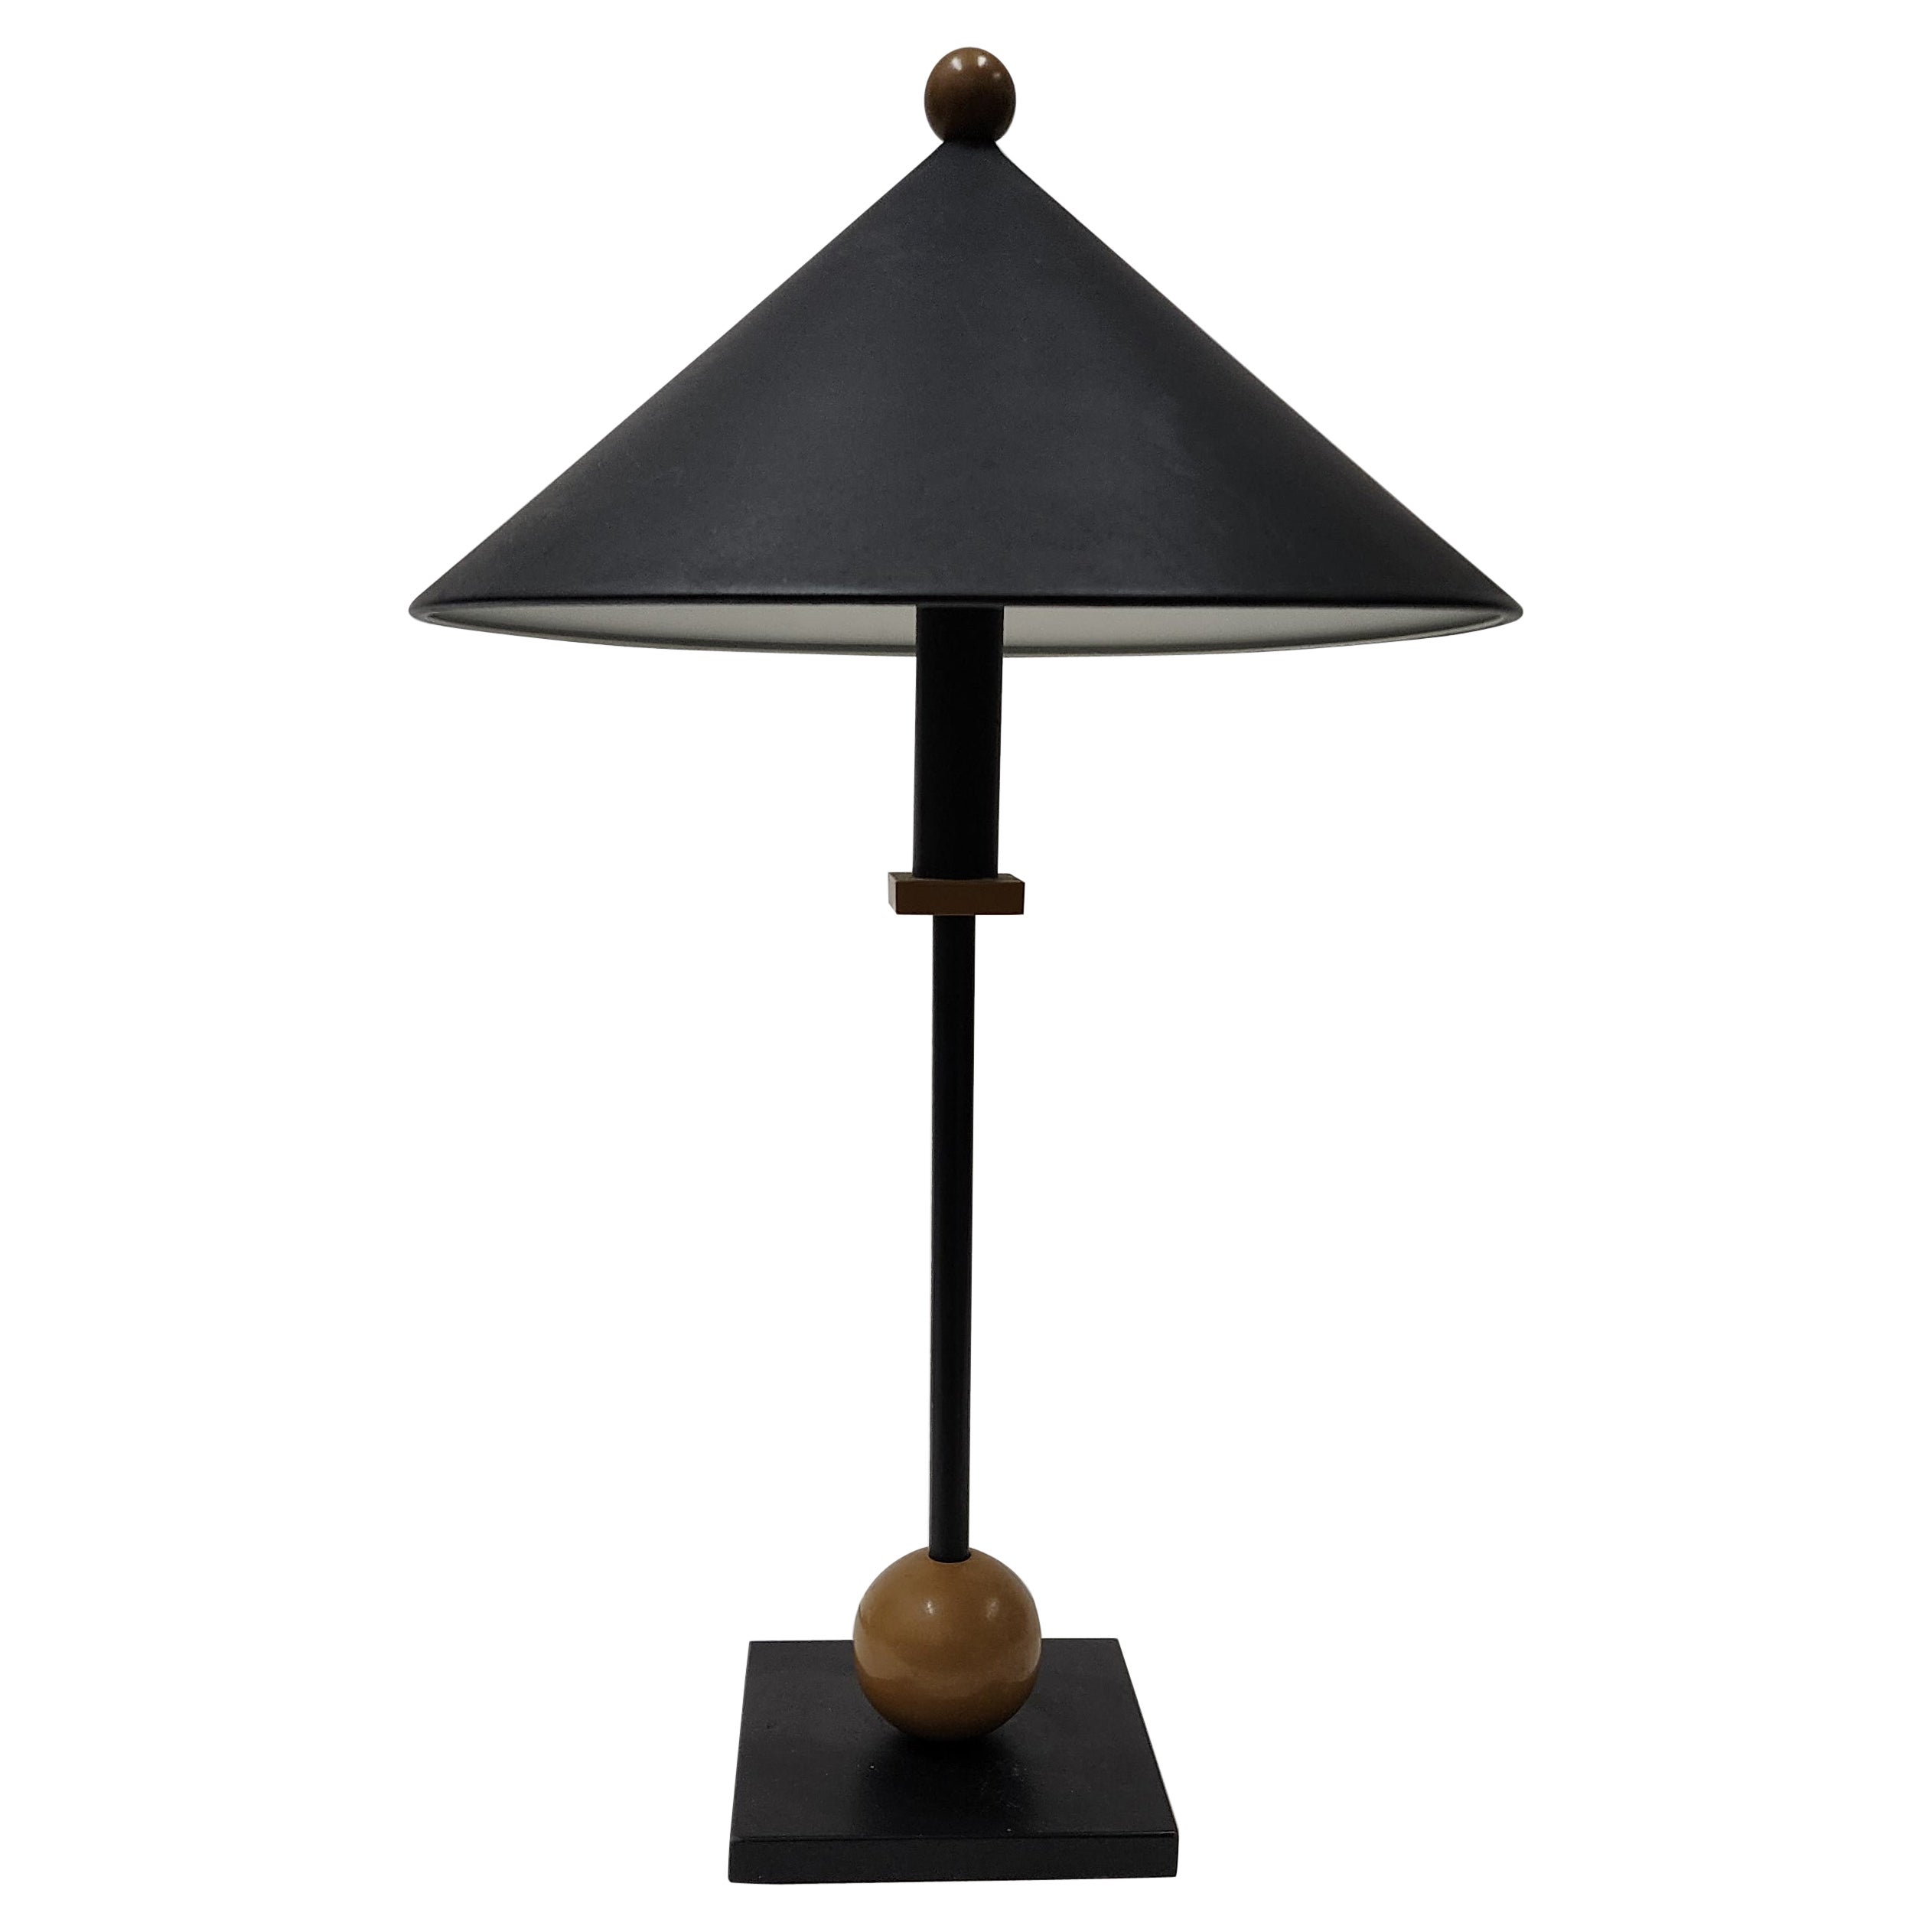 Robert Sonneman for George Kovacs memphis Post Modern table lamp 